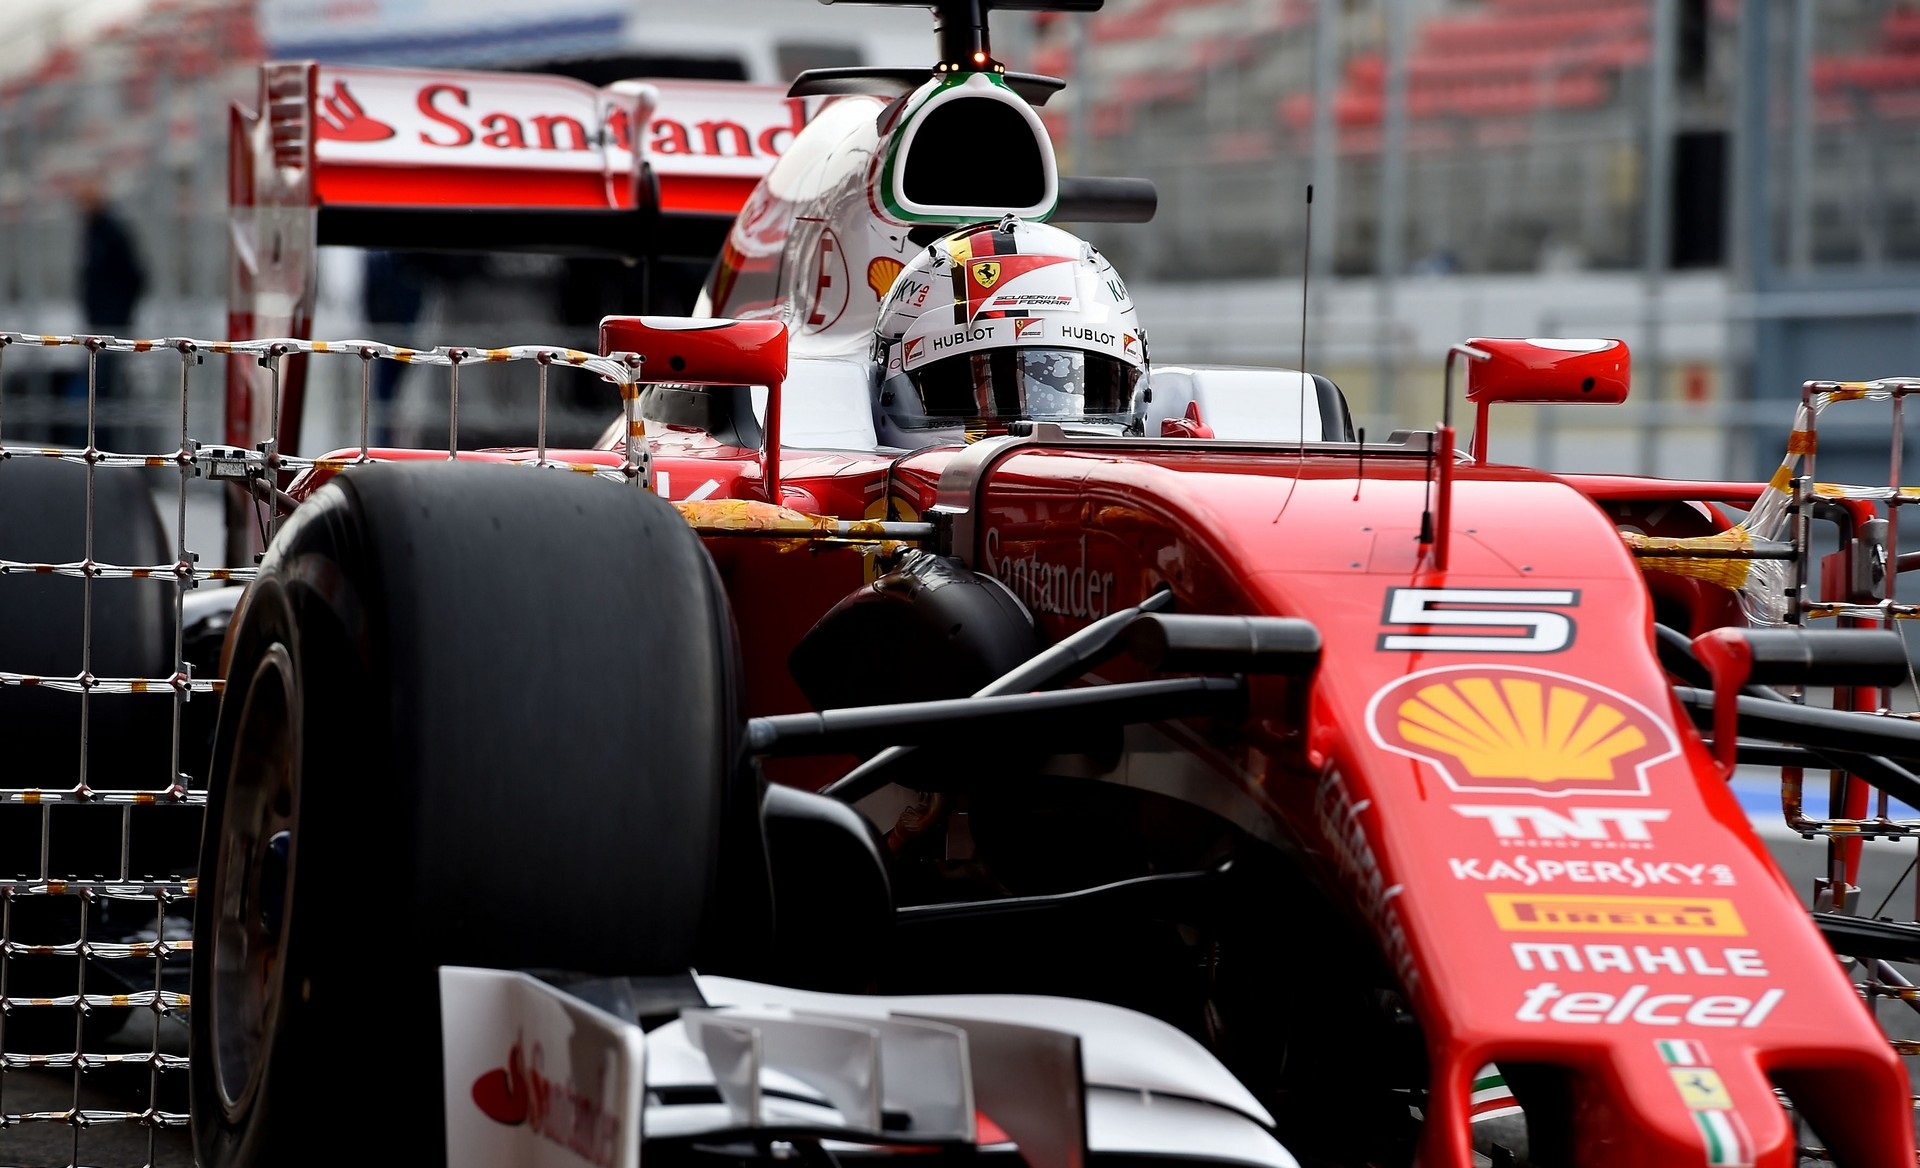 Analiz: Ferrari En Hızlı Zamanlara Sahipti, Gerçekten Bu Kadar Hızlı mı